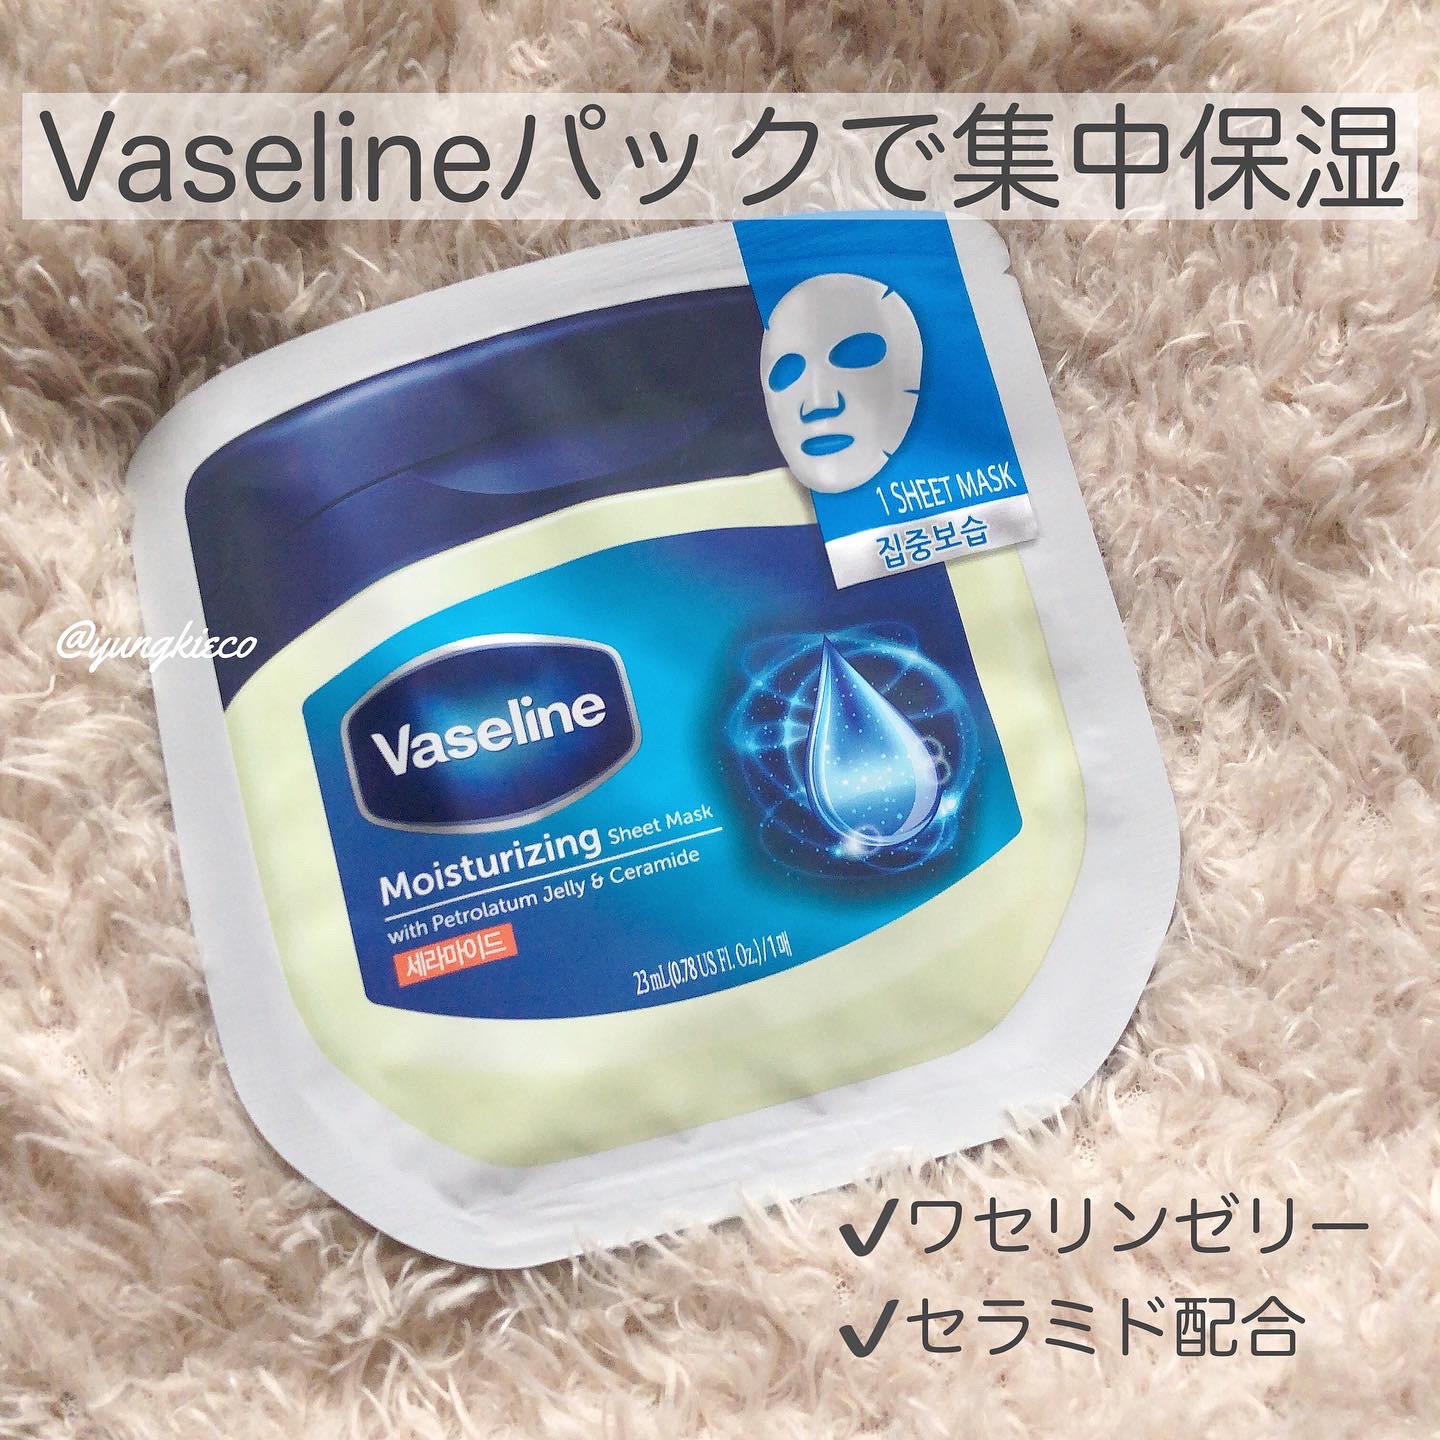 Vaseline(ヴァセリン) モイスチャーライジング シートマスクの良い点・メリットに関するyungさんの口コミ画像1